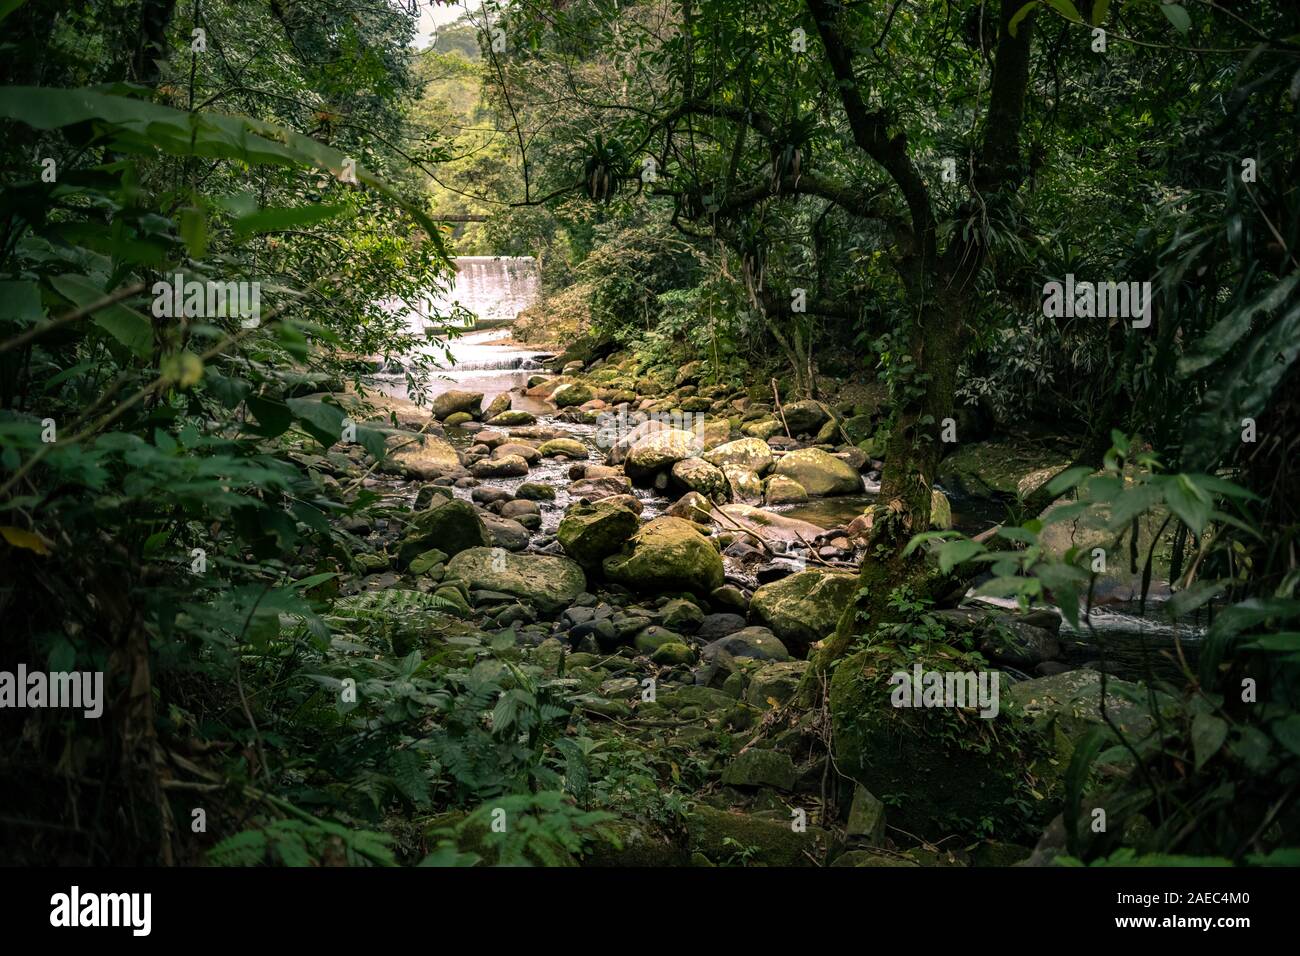 Grande Cascata con fiume e rocce, all'interno della foresta pluviale, Rio de Janeiro, Brasile Foto Stock